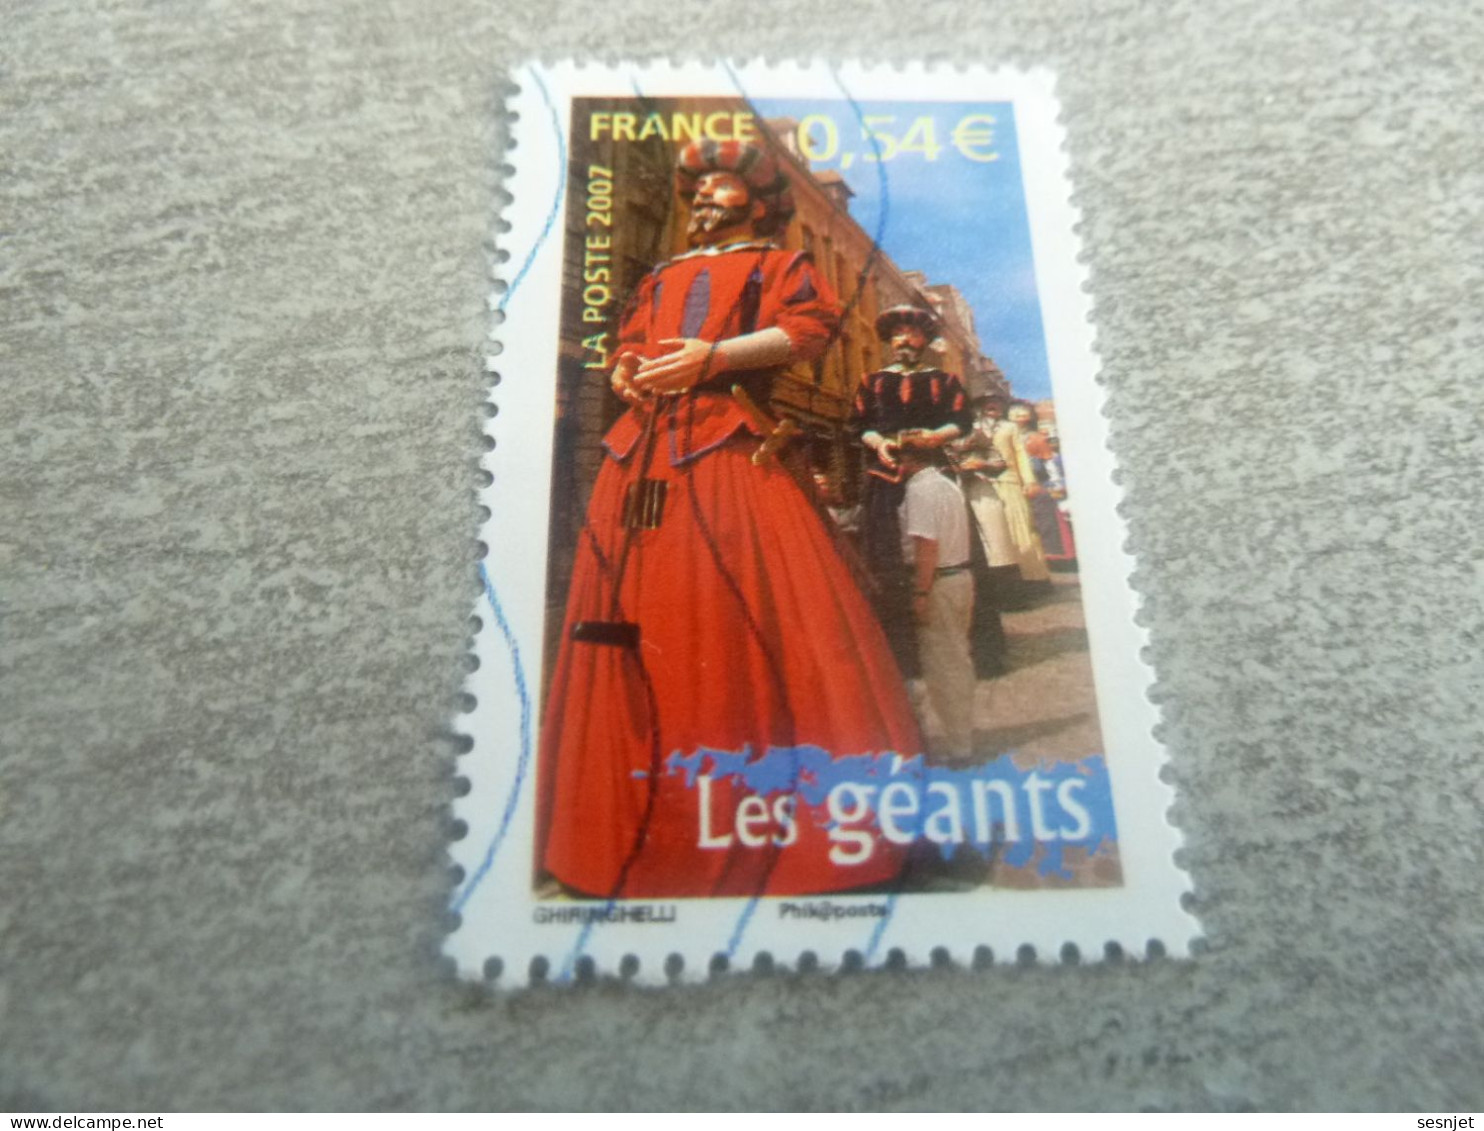 Les Géants - Portraits De Régions - France à Vivre - 0.54 € - Yt 4095 - Multicolore - Oblitéré - Année 2007 - - Oblitérés